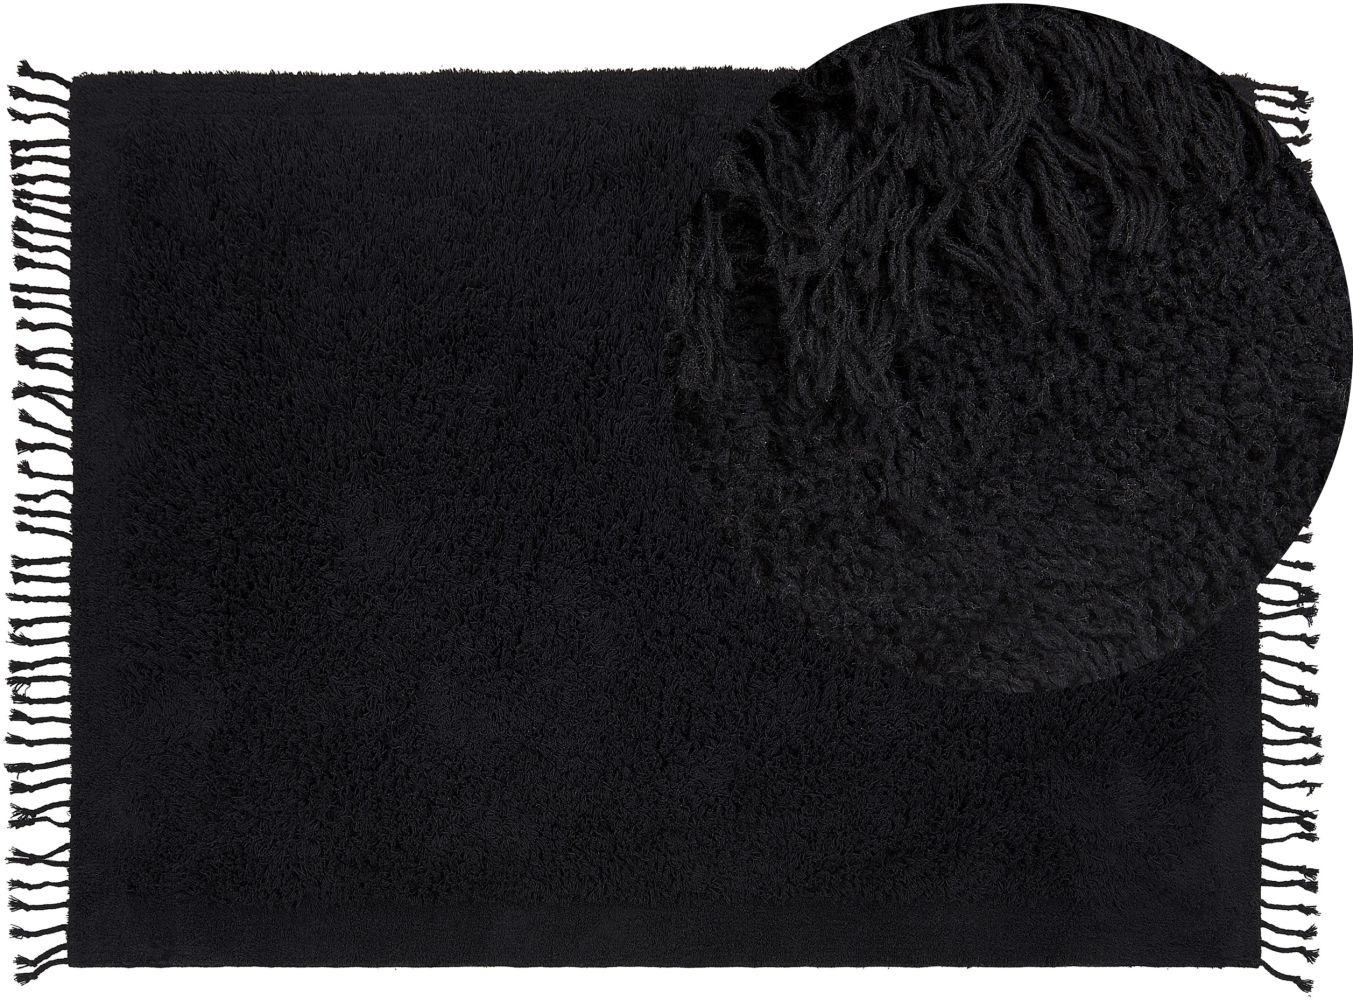 Teppich Baumwolle schwarz 140 x 200 cm Fransen Shaggy BITLIS Bild 1